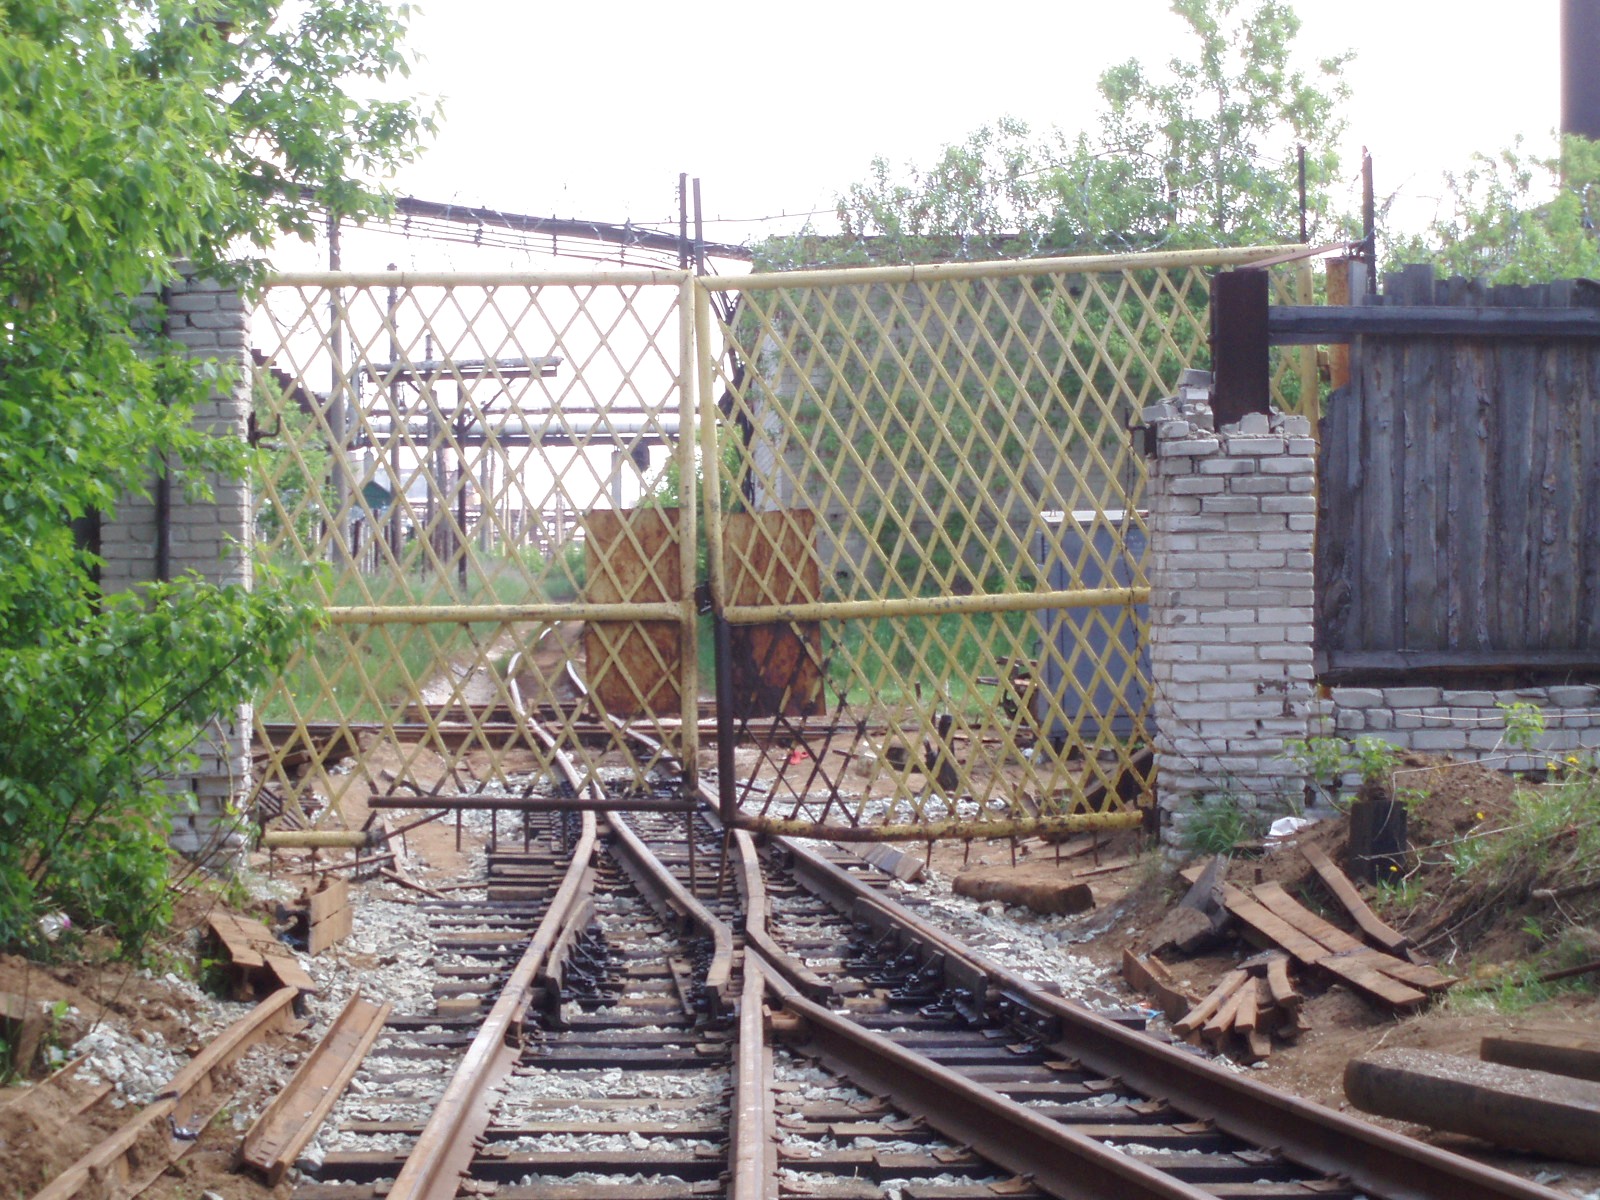 Узкоколейная железная дорога завода «Капролактам»  — фотографии, сделанные в 2007 году (часть 2)